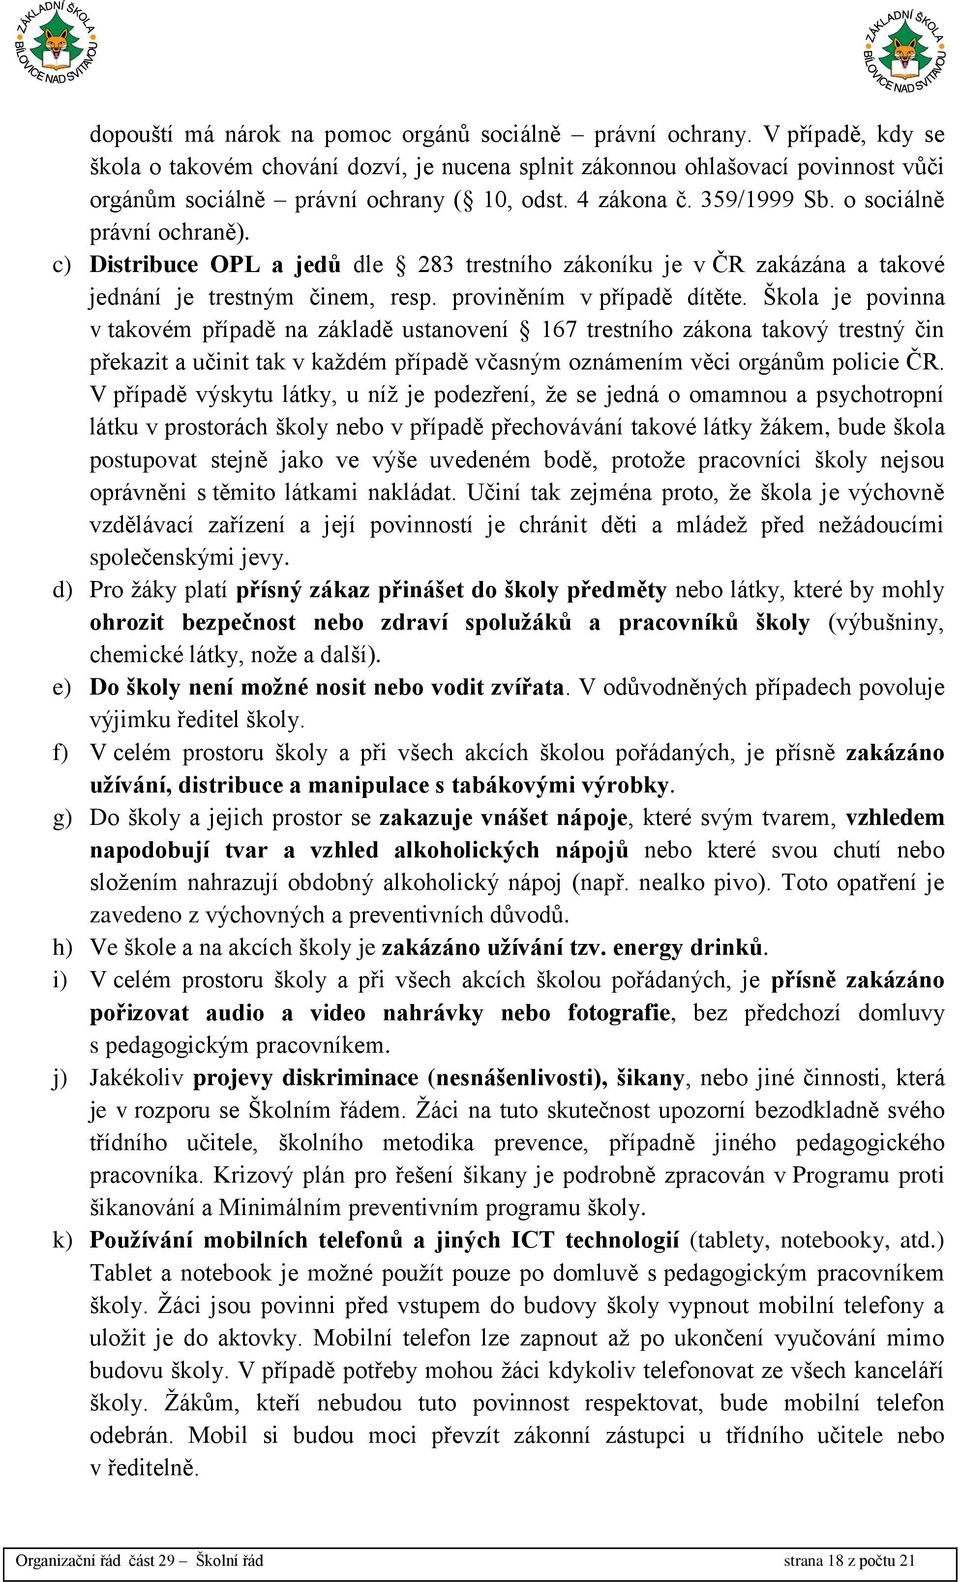 c) Distribuce OPL a jedů dle 283 trestního zákoníku je v ČR zakázána a takové jednání je trestným činem, resp. proviněním v případě dítěte.